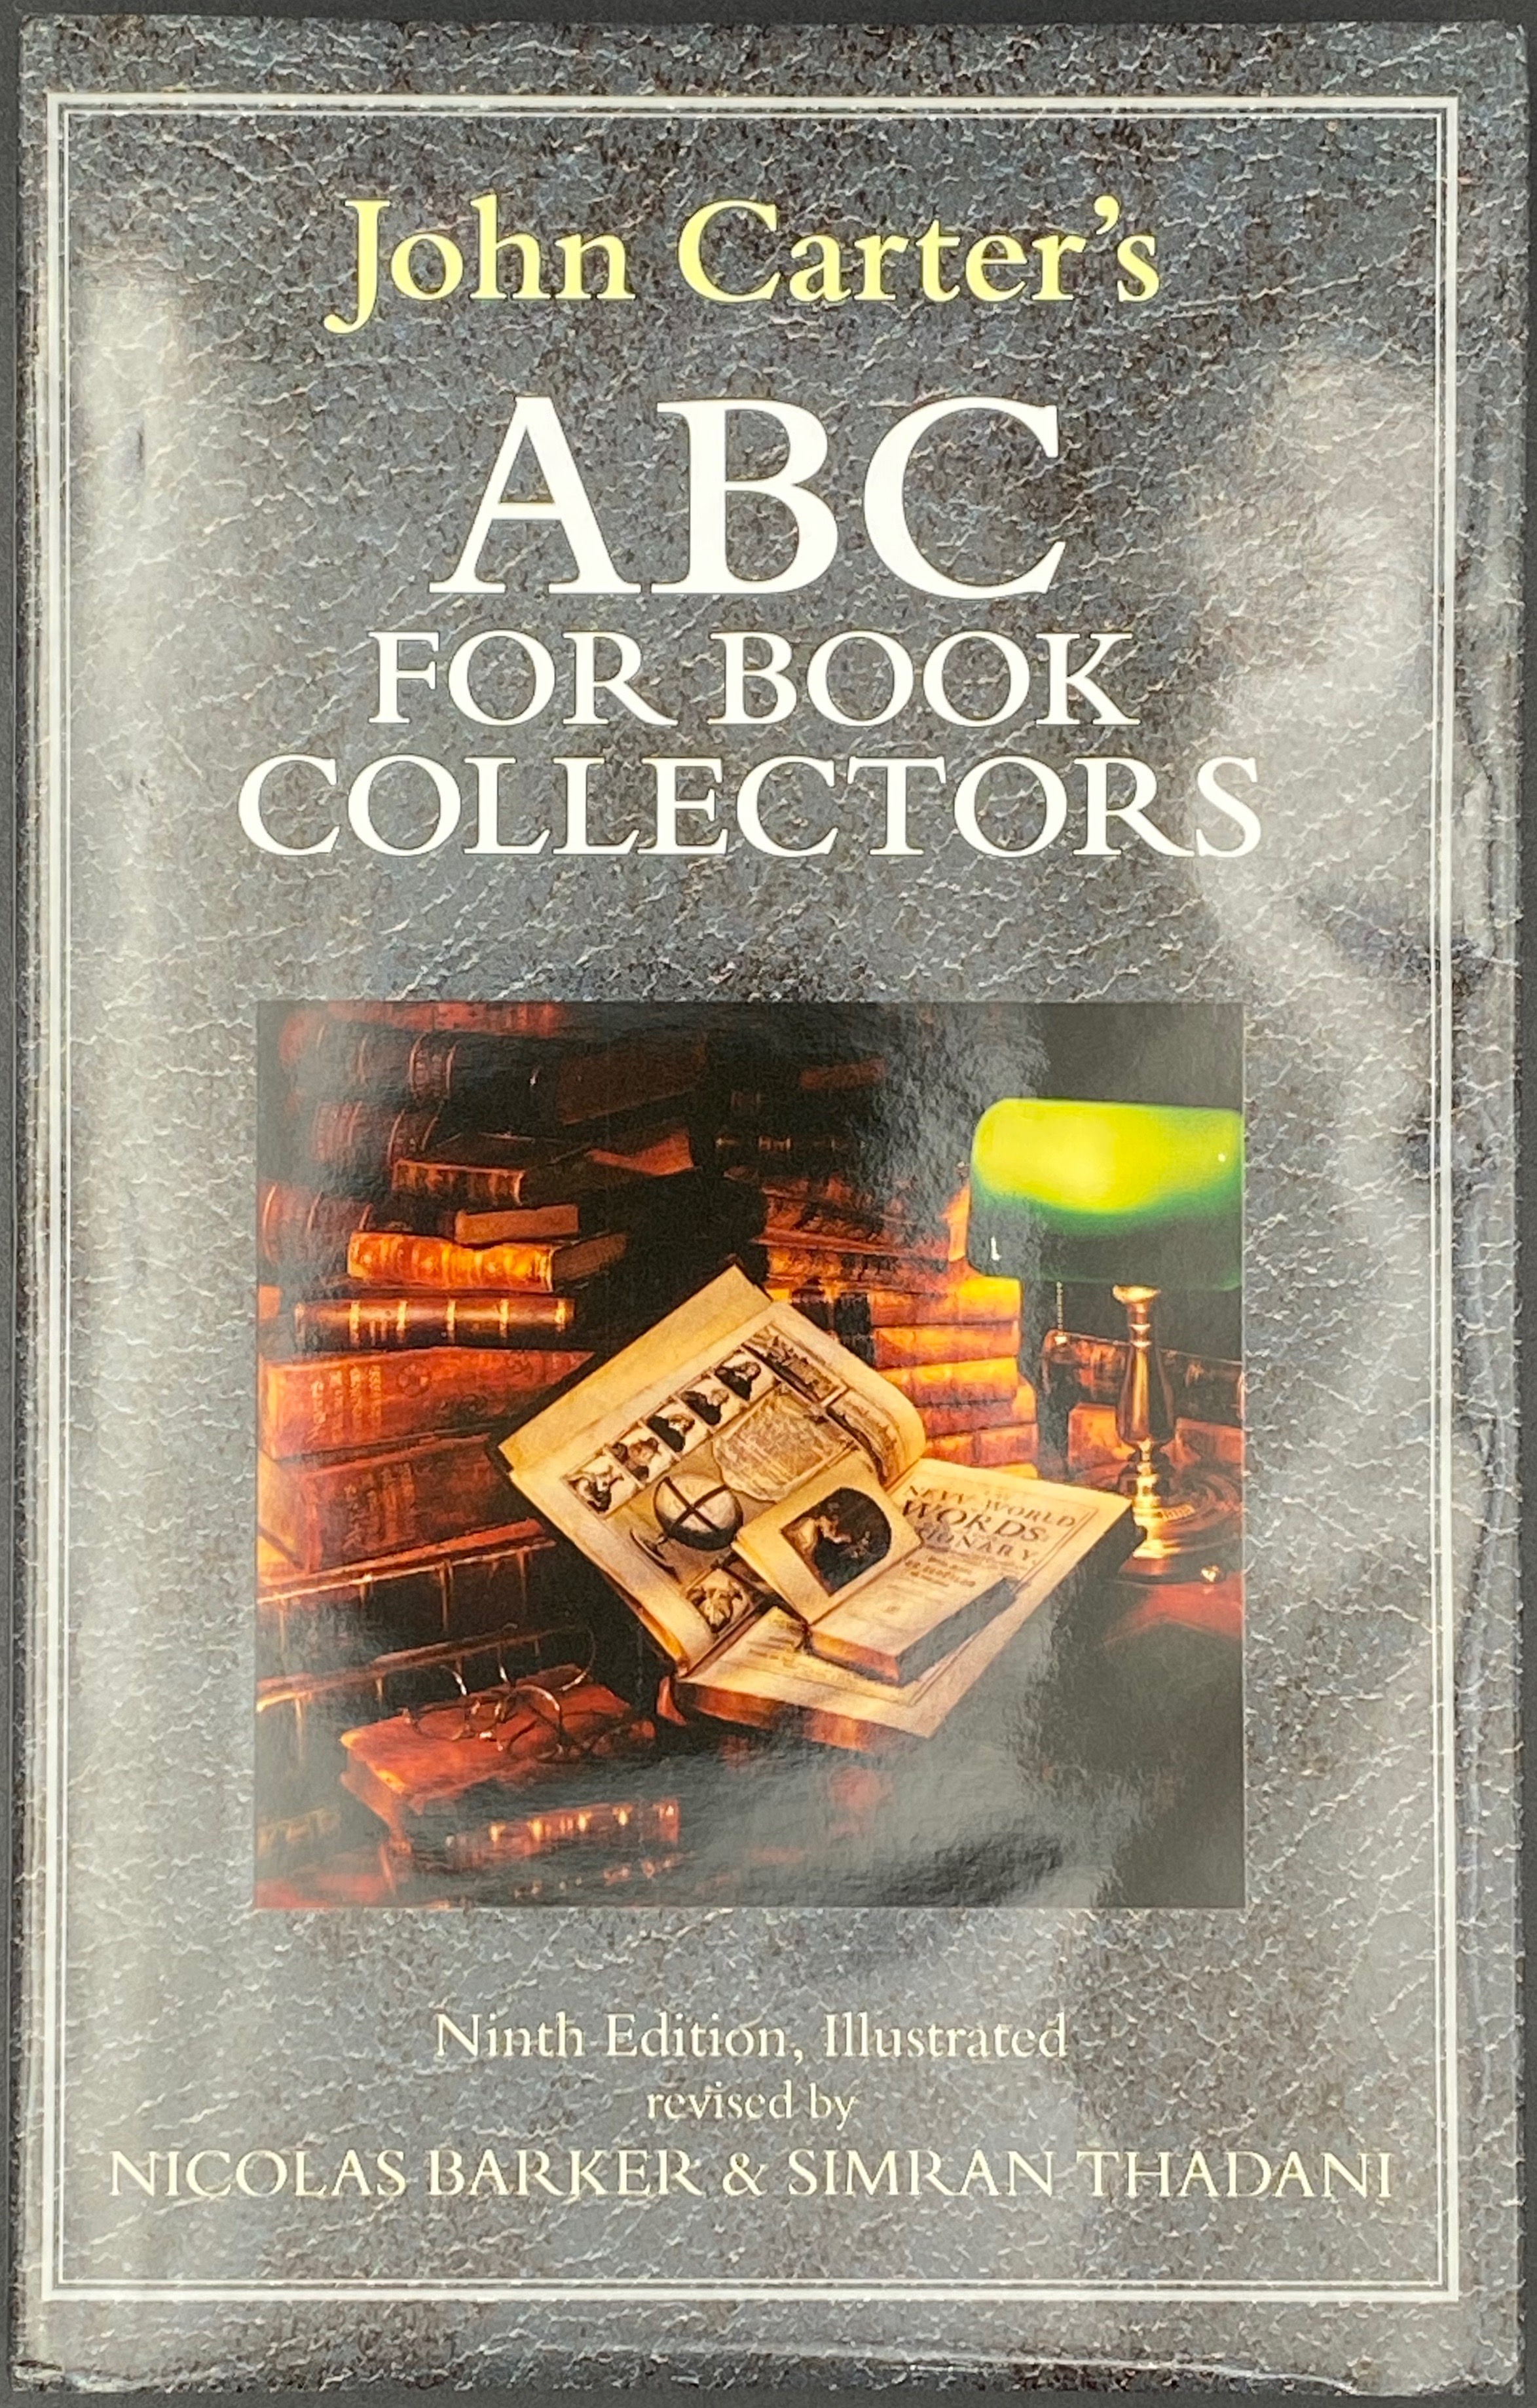 Nicolas Barker, Simran Thadani. John Carter 's ABC for Book Collectors. 9th Edition. — New Castle, DE: Oak Knoll Press, 2016. — 263 p., il.